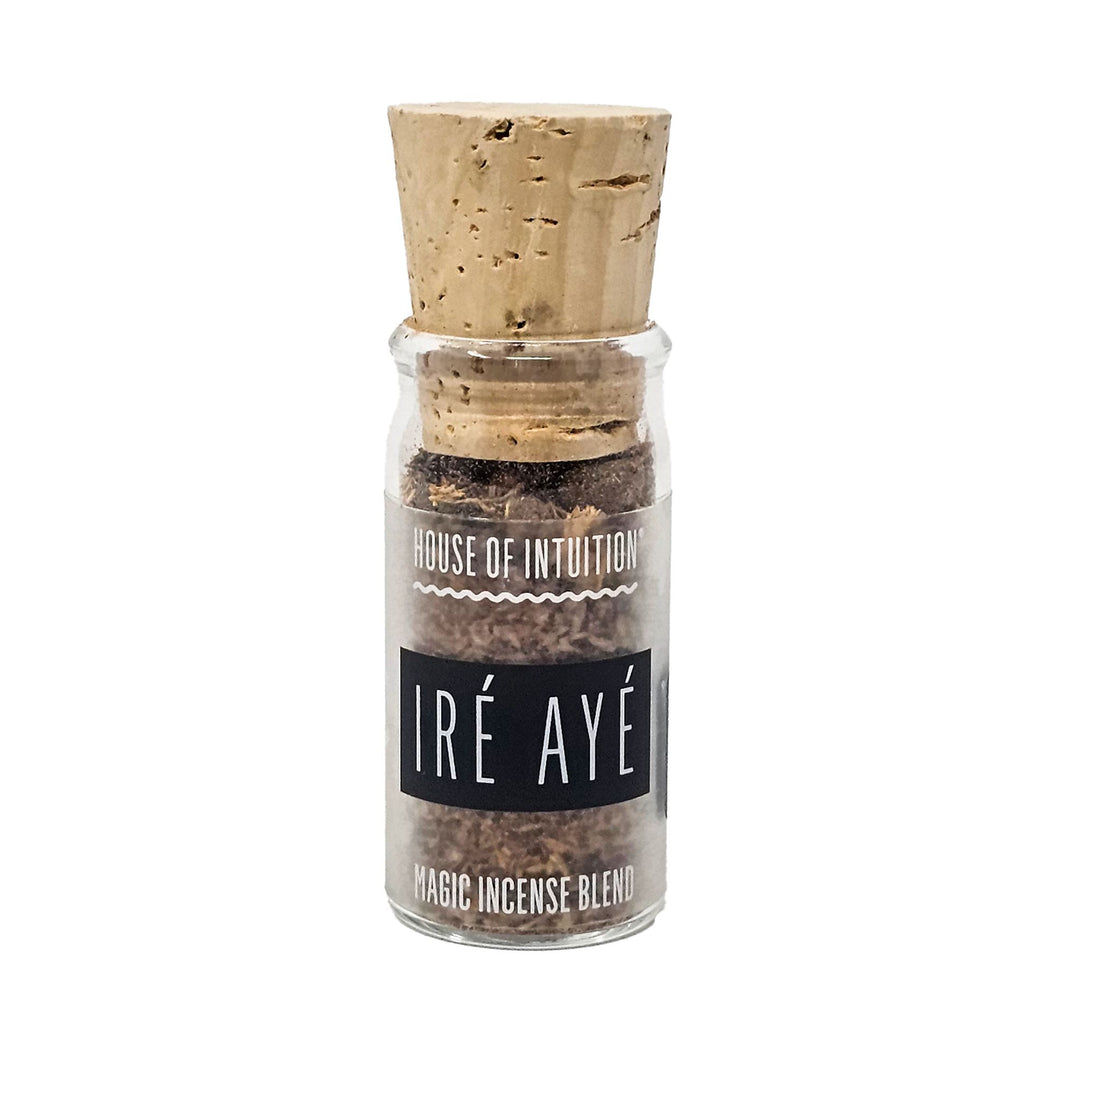 Ire Aye Magic Incense Blend (Prosperity) "Glass Jar" Incense & Holders -Incense V50 